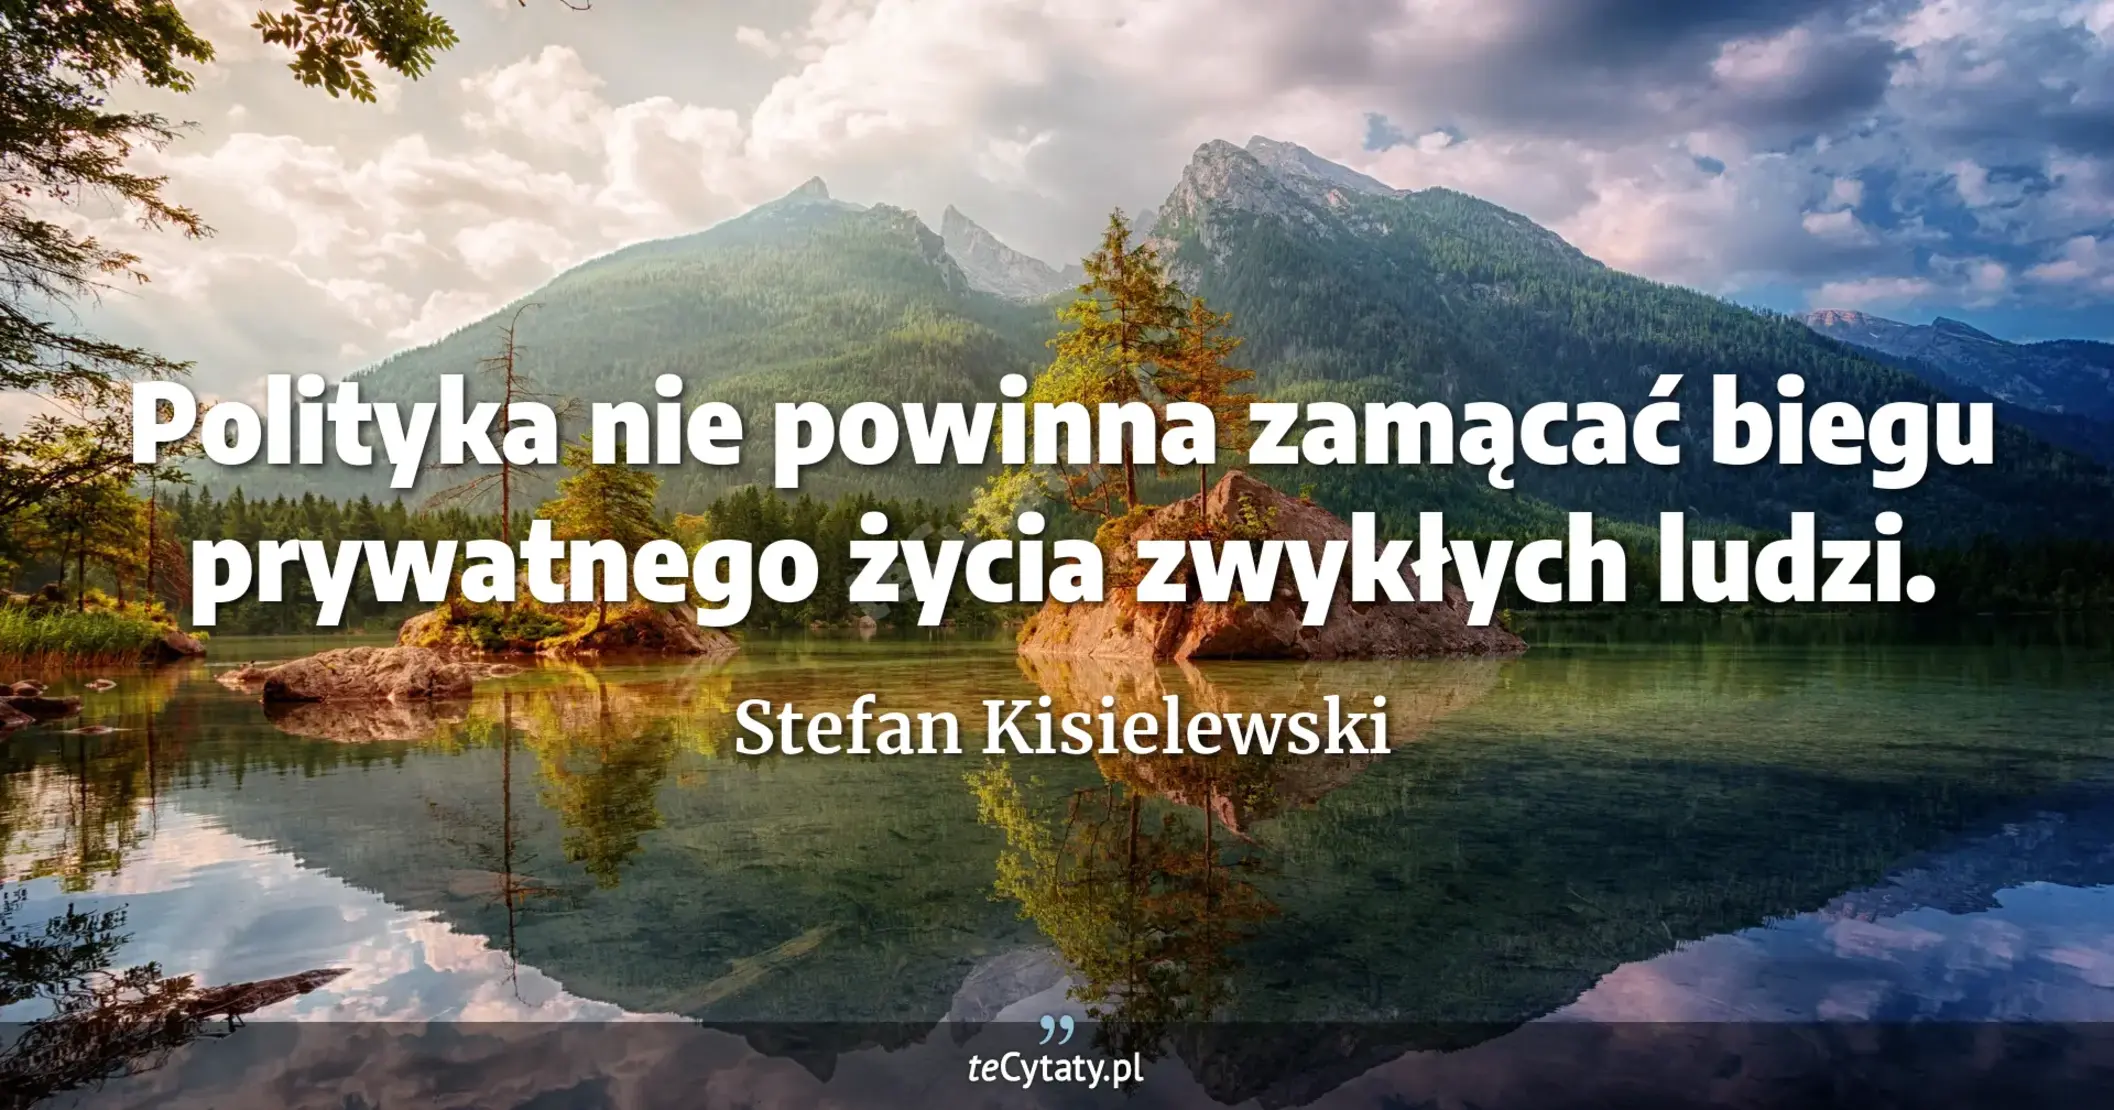 Polityka nie powinna zamącać biegu prywatnego życia zwykłych ludzi. - Stefan Kisielewski